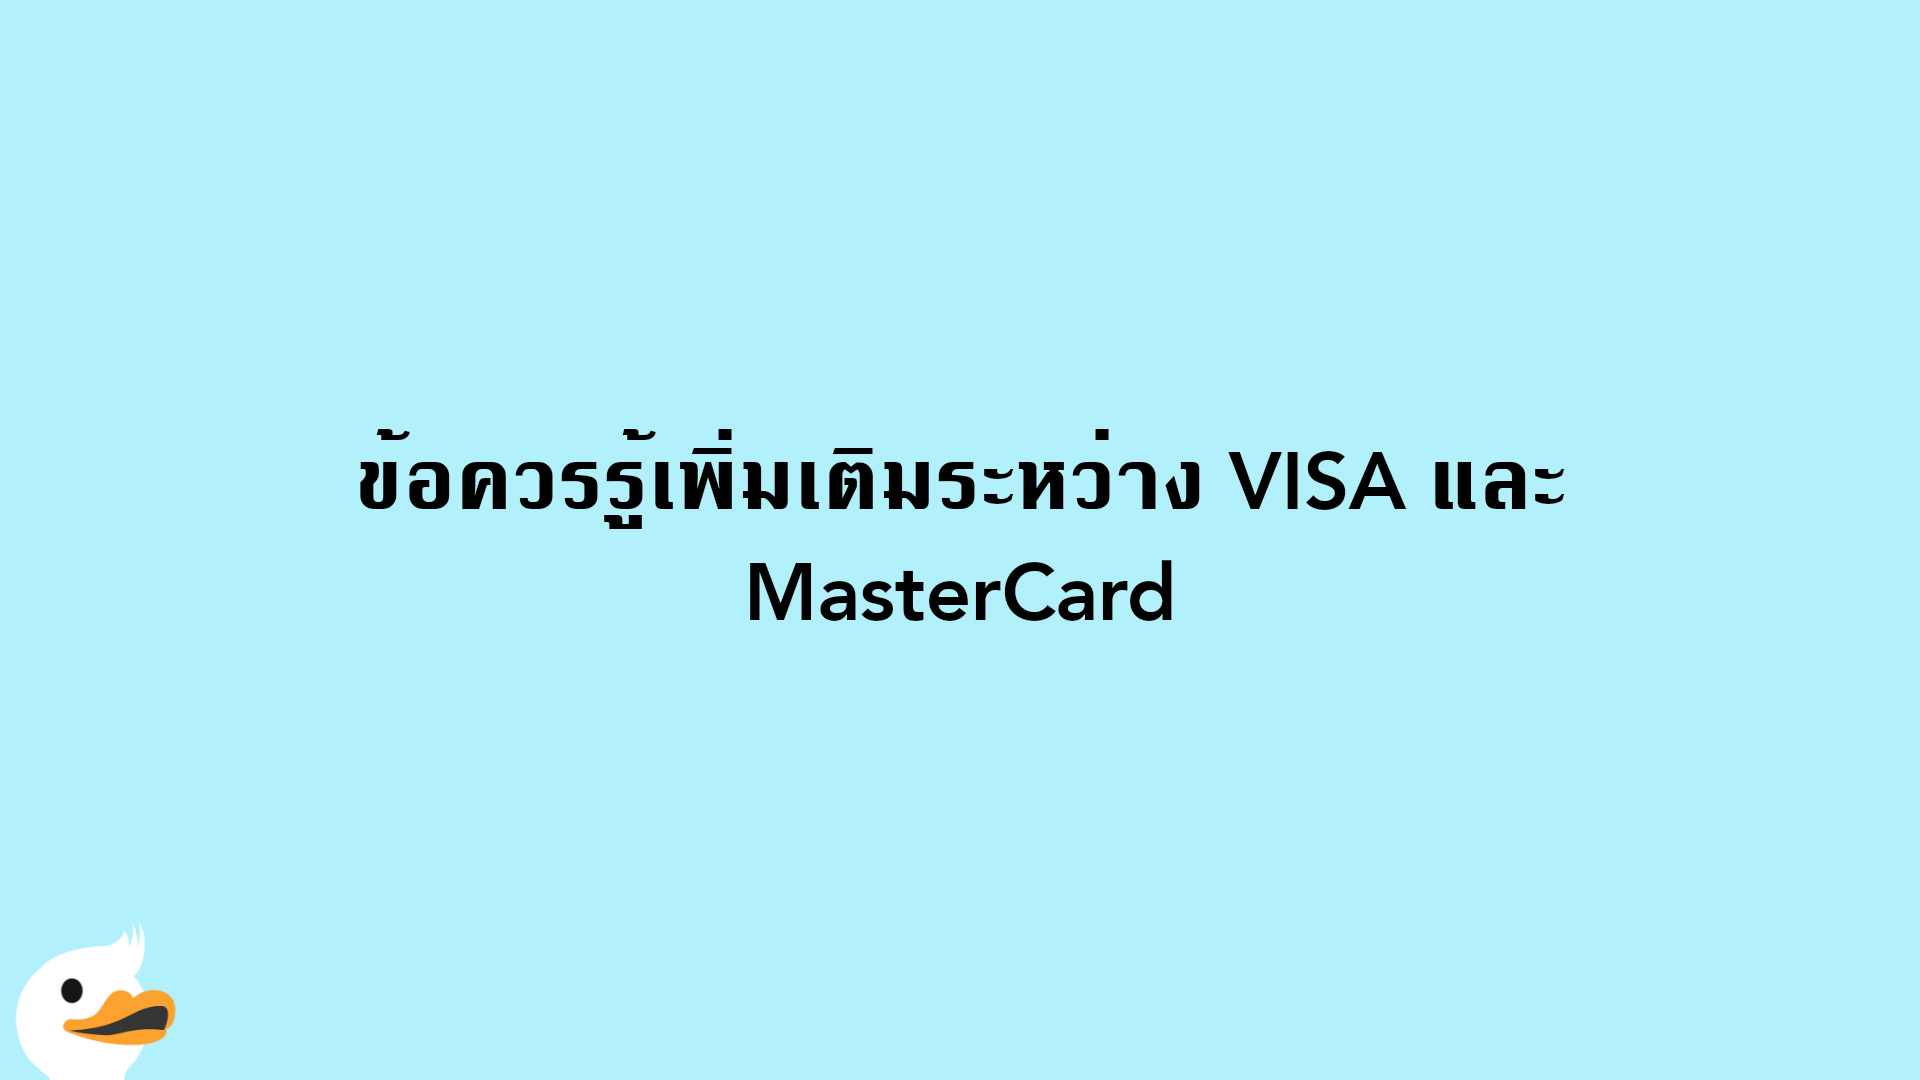 ข้อควรรู้เพิ่มเติมระหว่าง VISA และ MasterCard